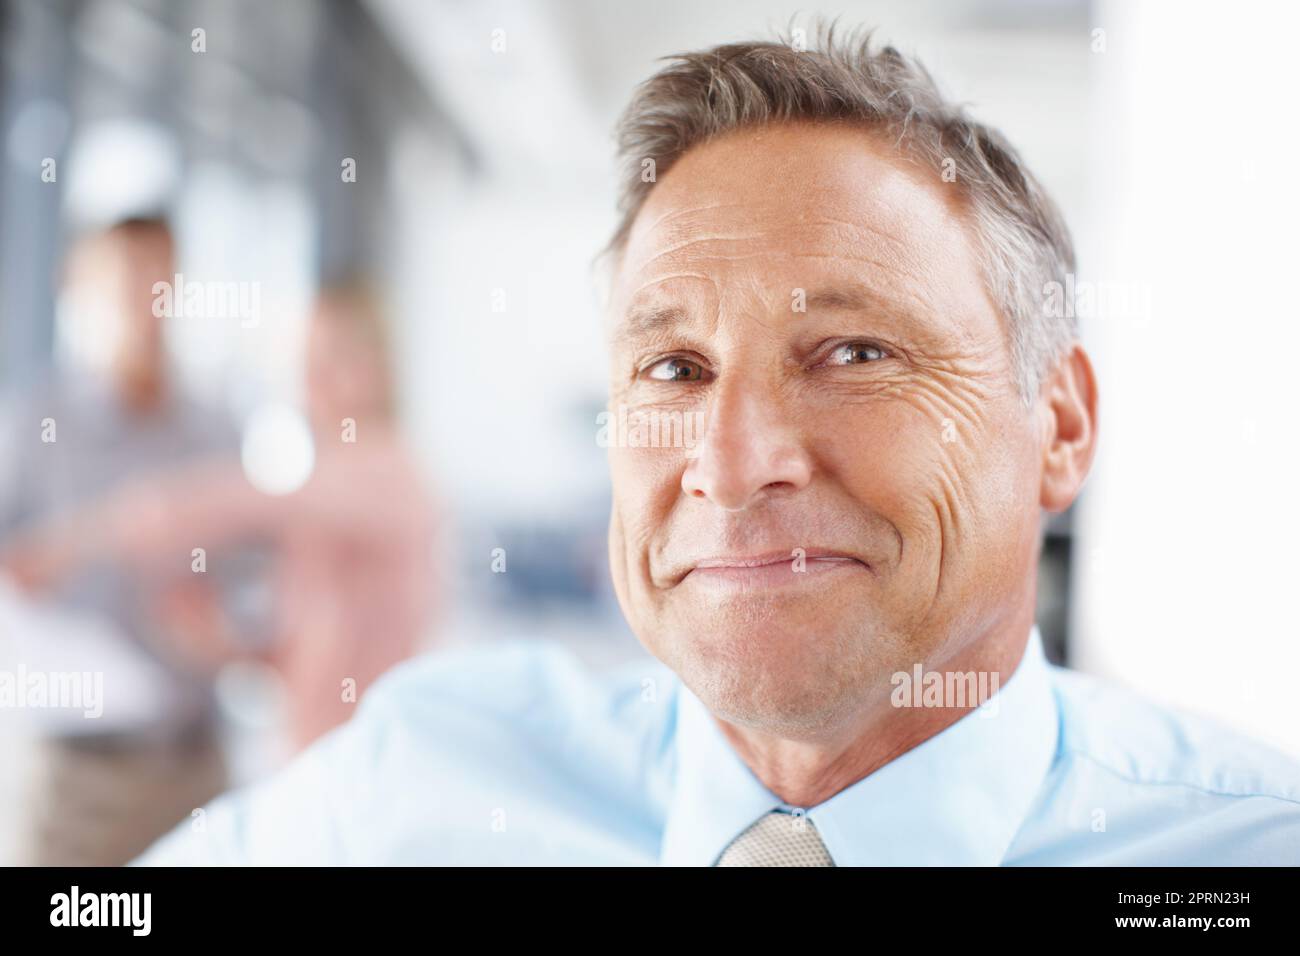 Seine Führungsqualitäten sind unbestritten. Porträt eines leitenden Geschäftsführers, der selbstbewusst lächelt – Copyspace. Stockfoto